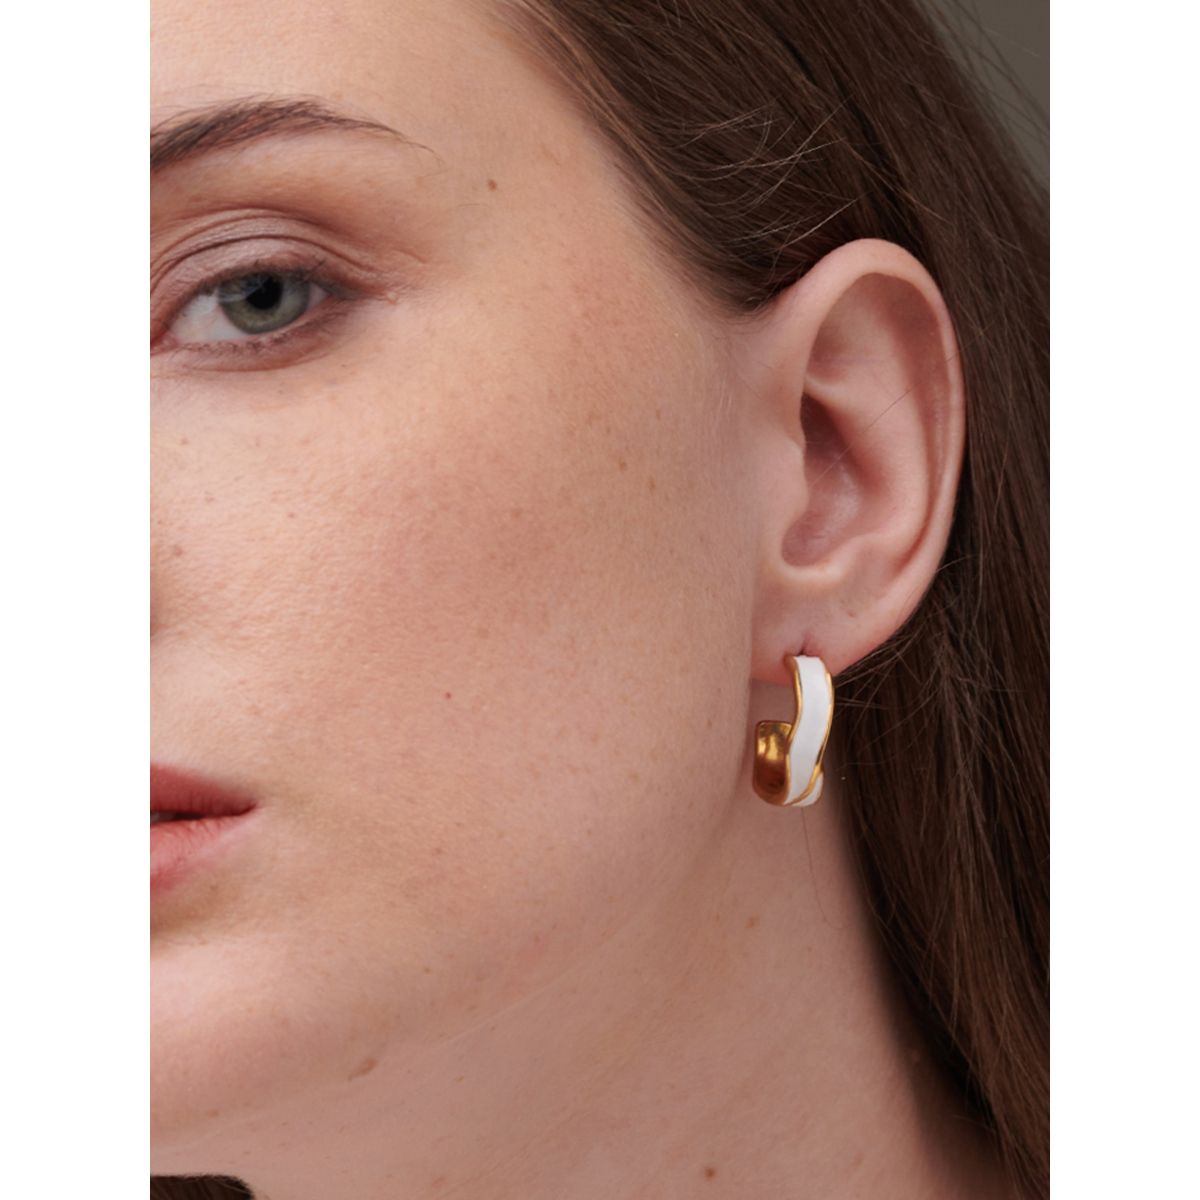 Buy One Gram Gold Small Bali Jhumka Earrings Gold Design for Girls